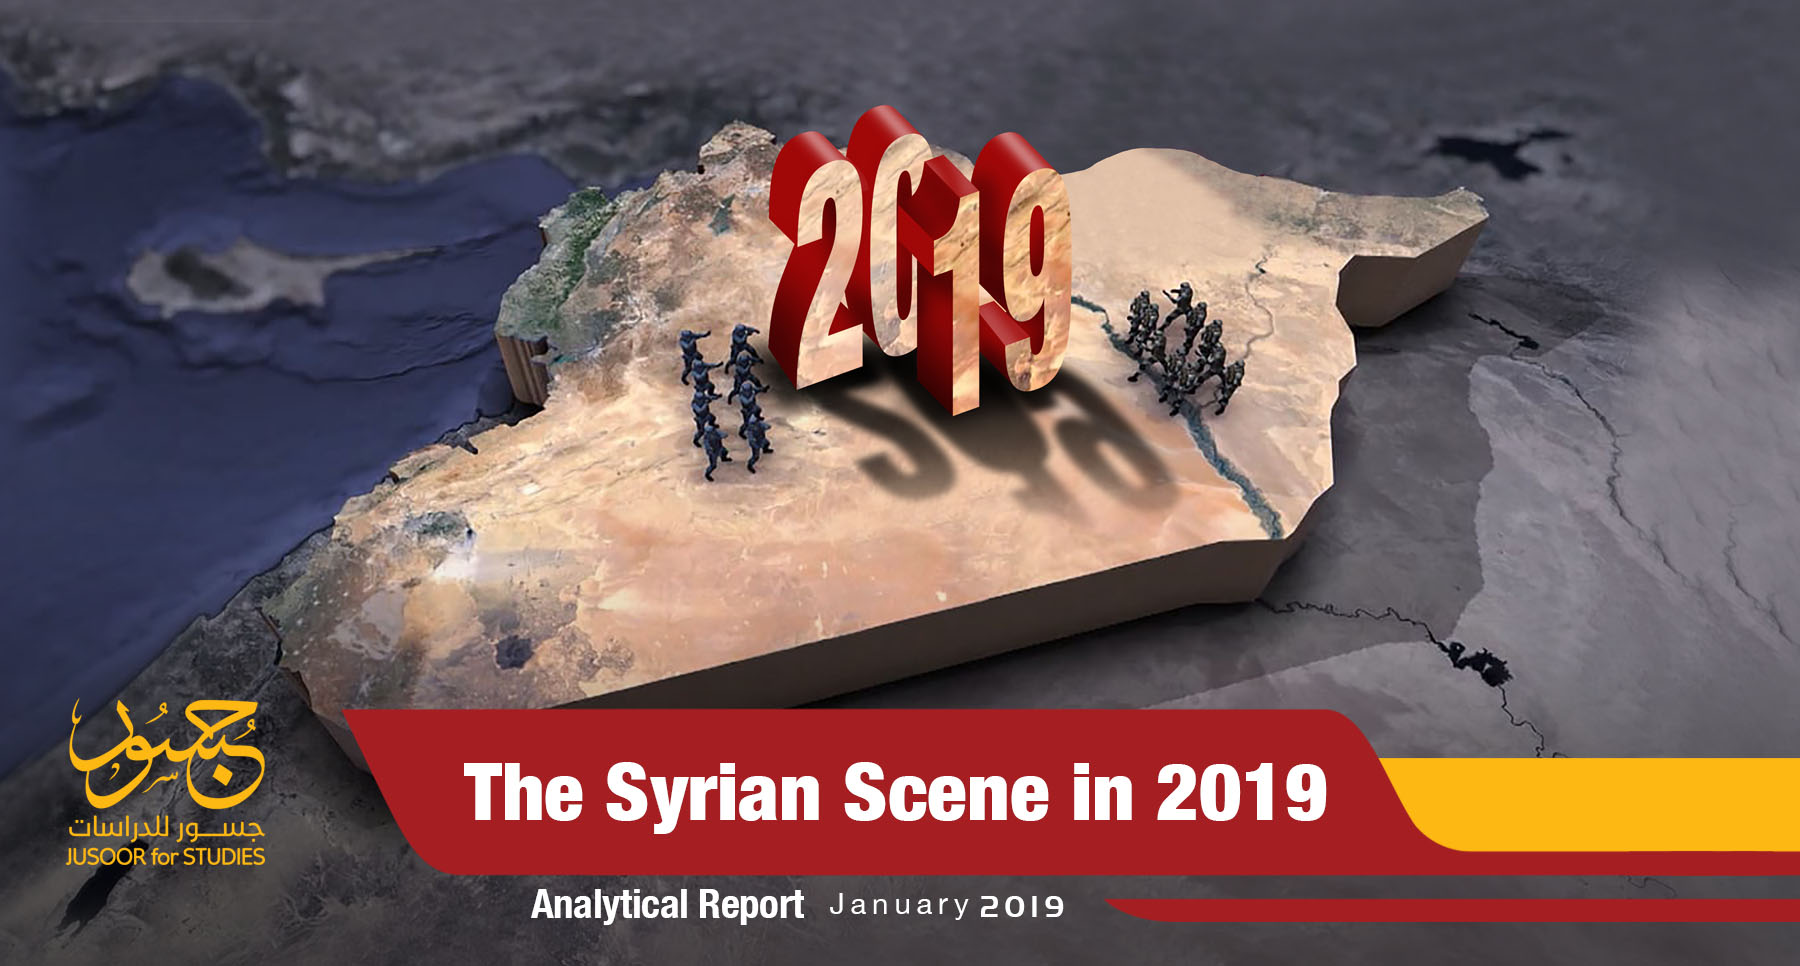 The Syrian Scene in 2019